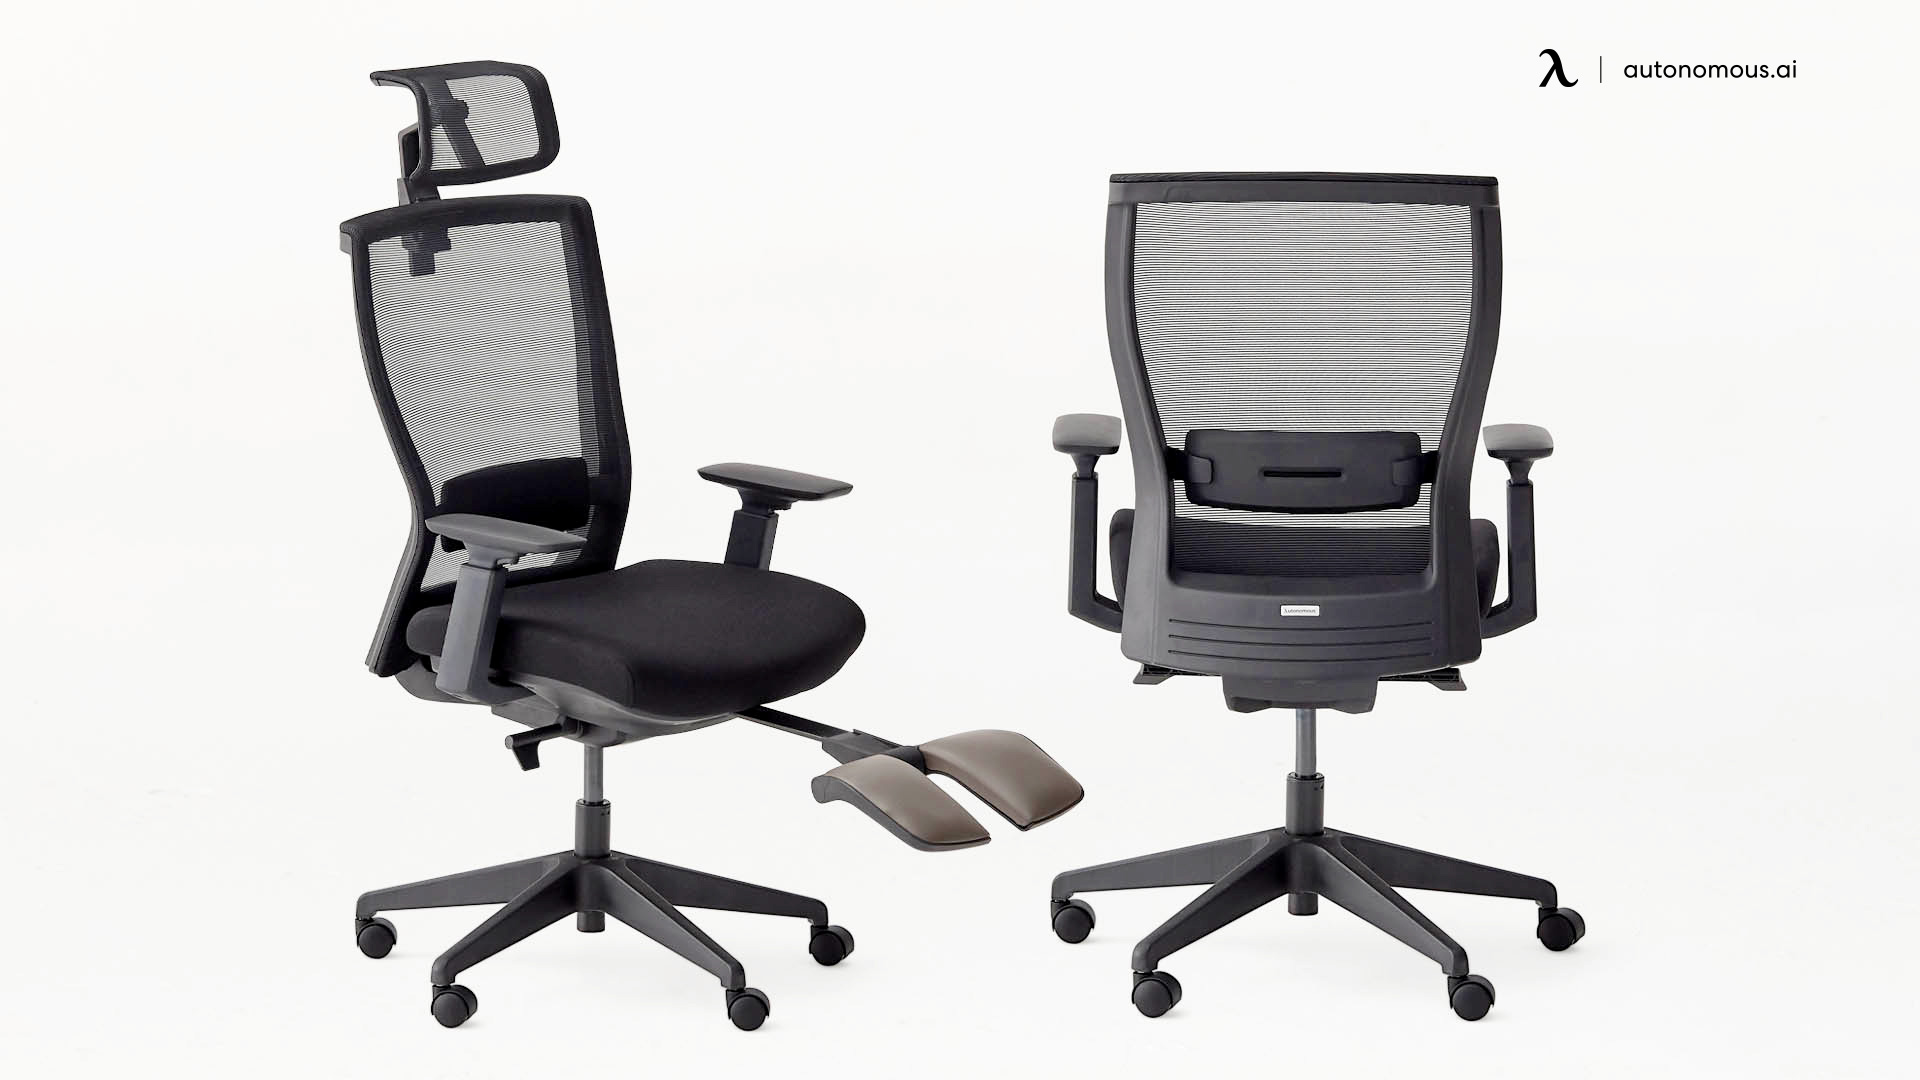 ErgoChair Recline office furniture online